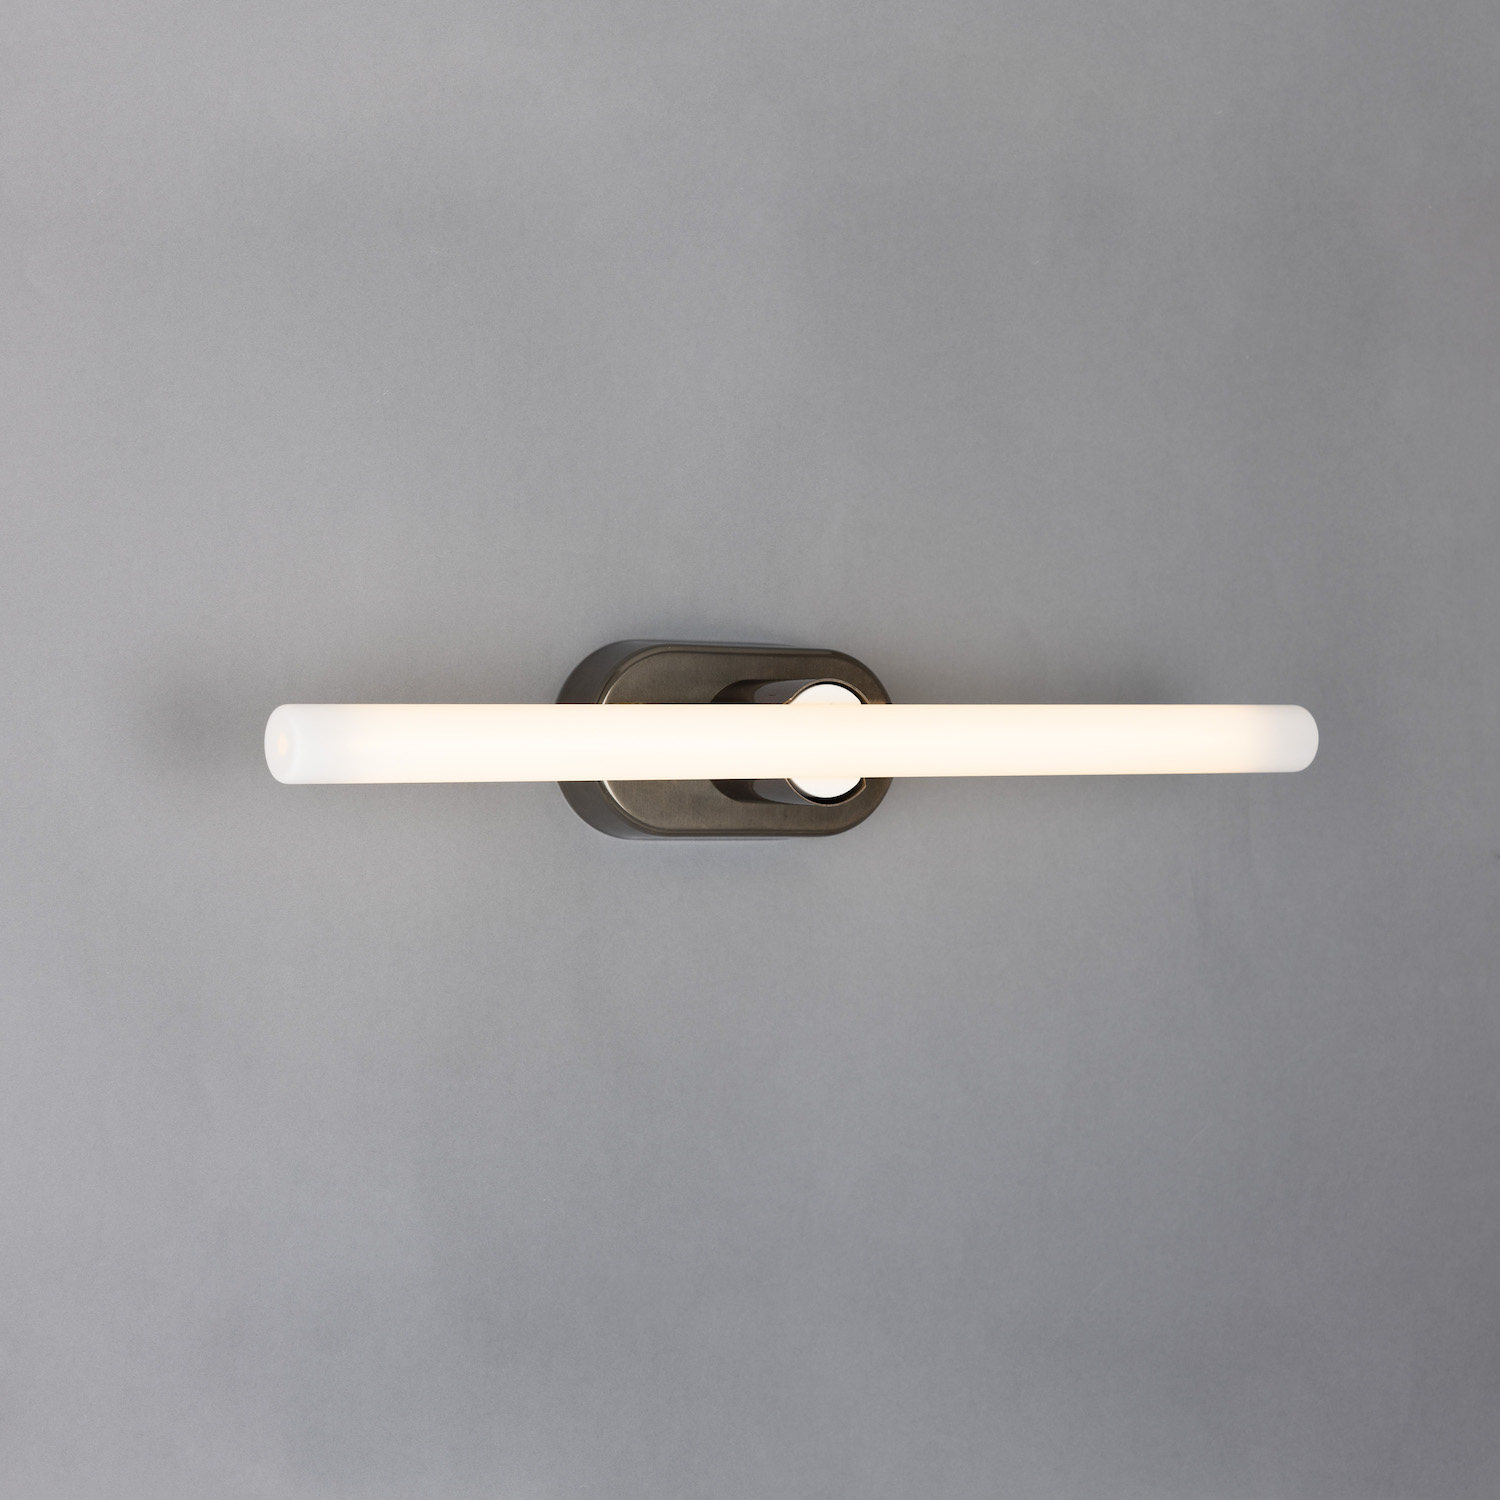 Minimalistische Wand- oder Spiegelleuchte aus Messing: Messing alt-silbern patiniert, Modell 2